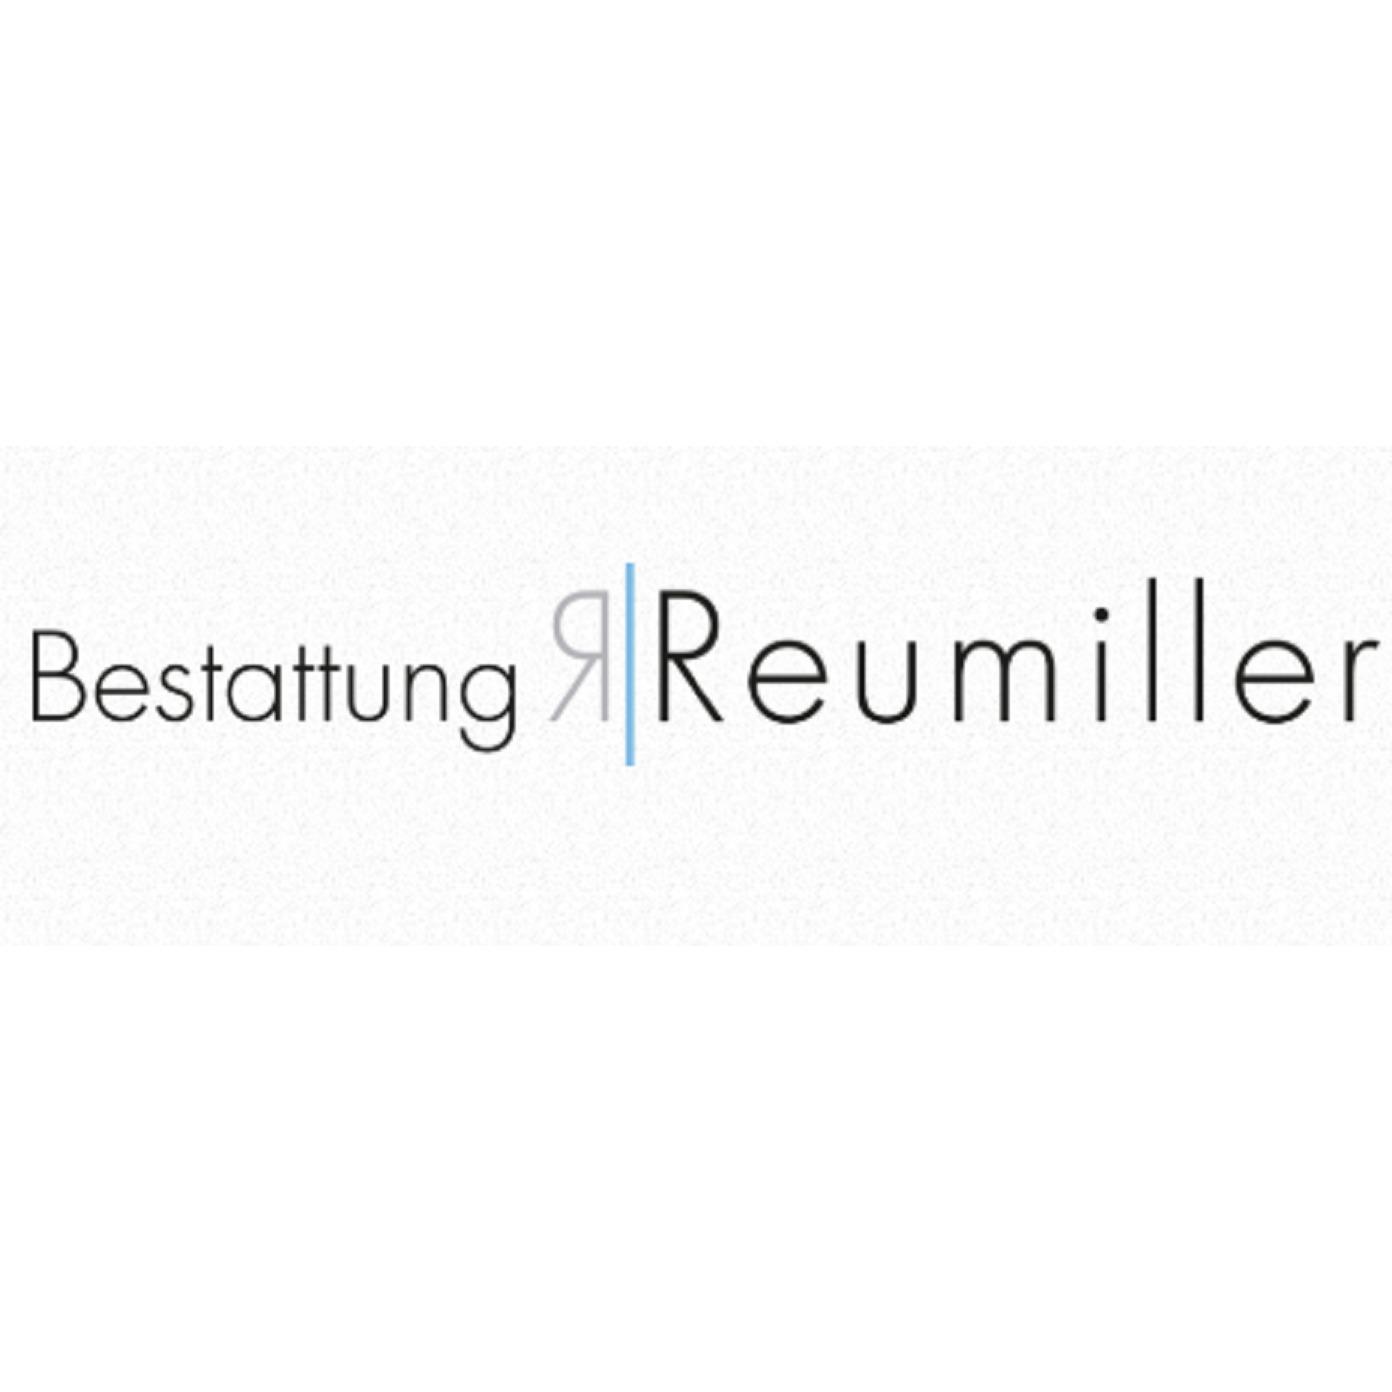 Bestattung Reumiller GmbH Logo